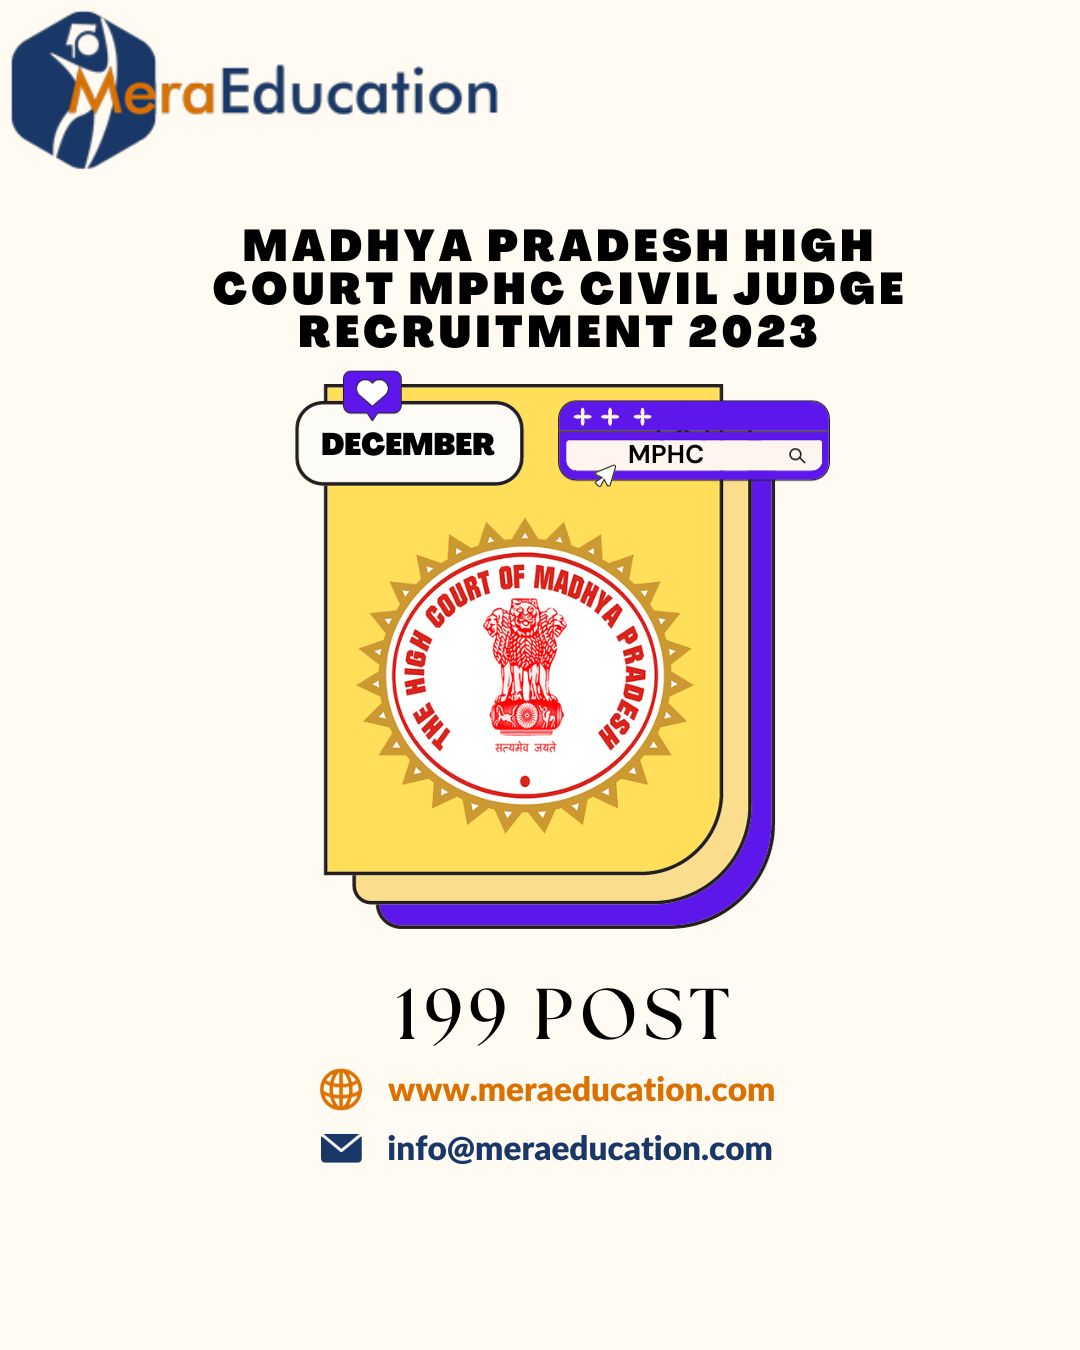 Madhya Pradesh High Court MPHC Civil Judge Recruitment 2023